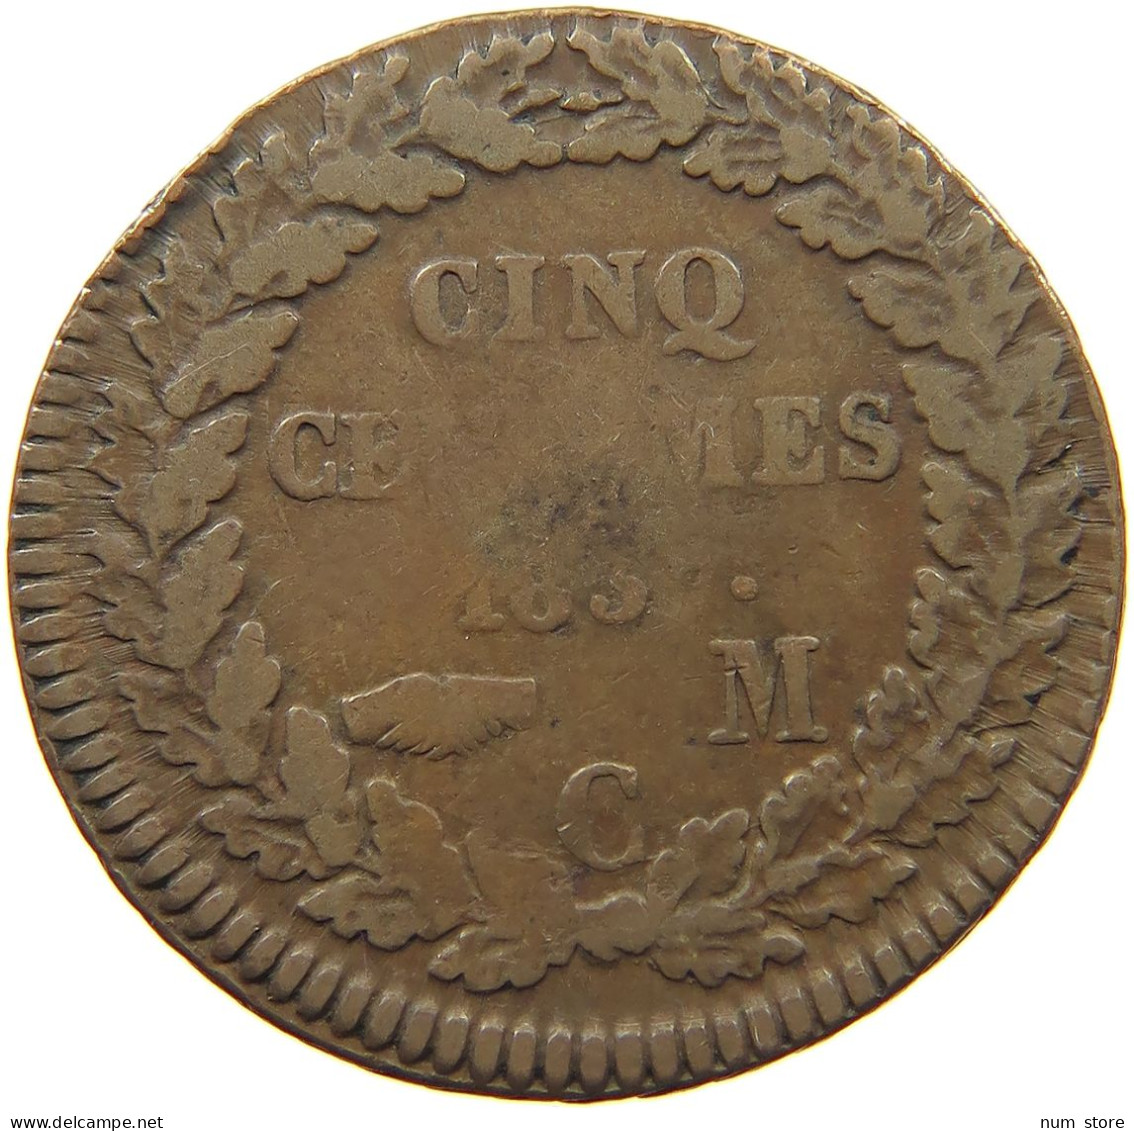 MONACO 5 CENTIMES 1837 C HONORE V., 1819-1841 #MA 021686 - 1505-1795 De Lucien Ier à Honoré III